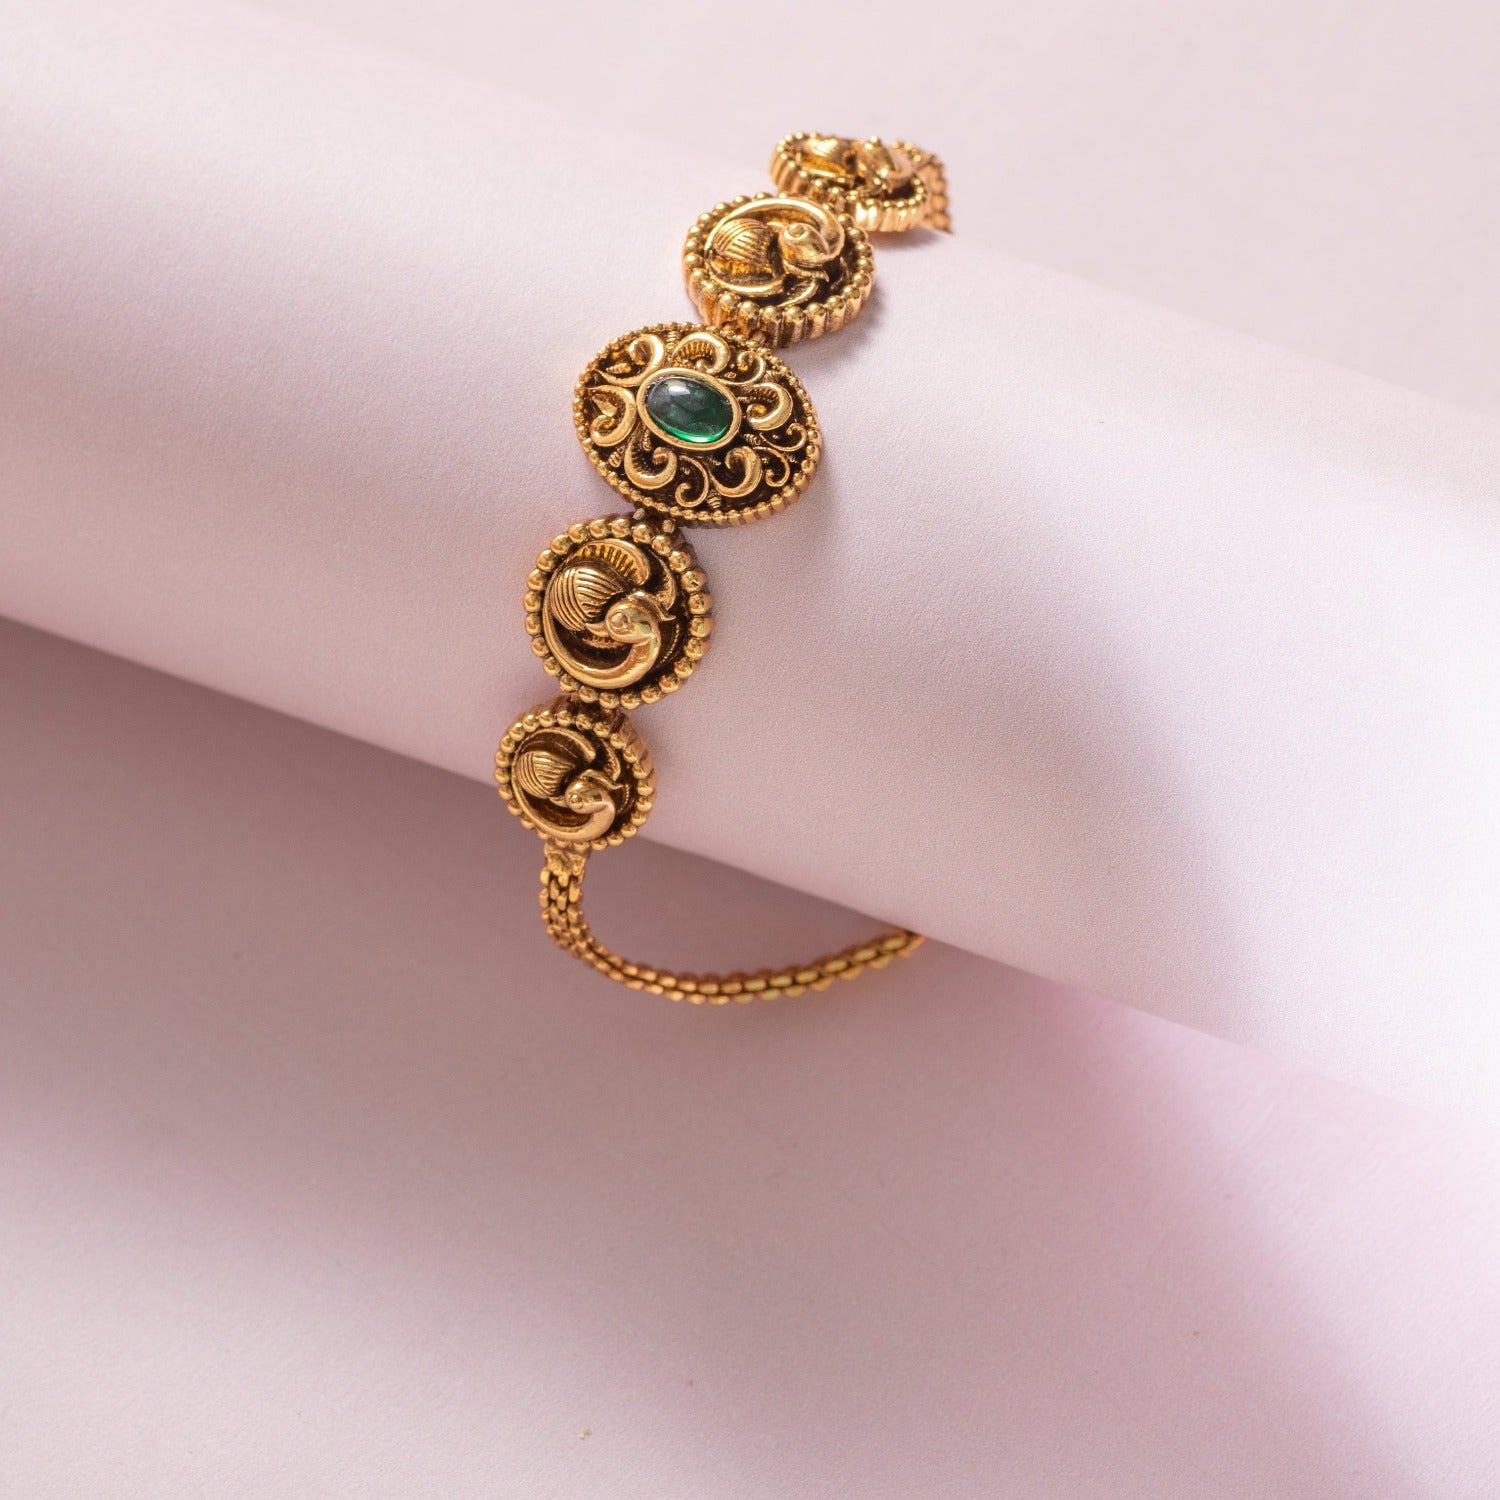 Gold Antique Bracelet design online catalog